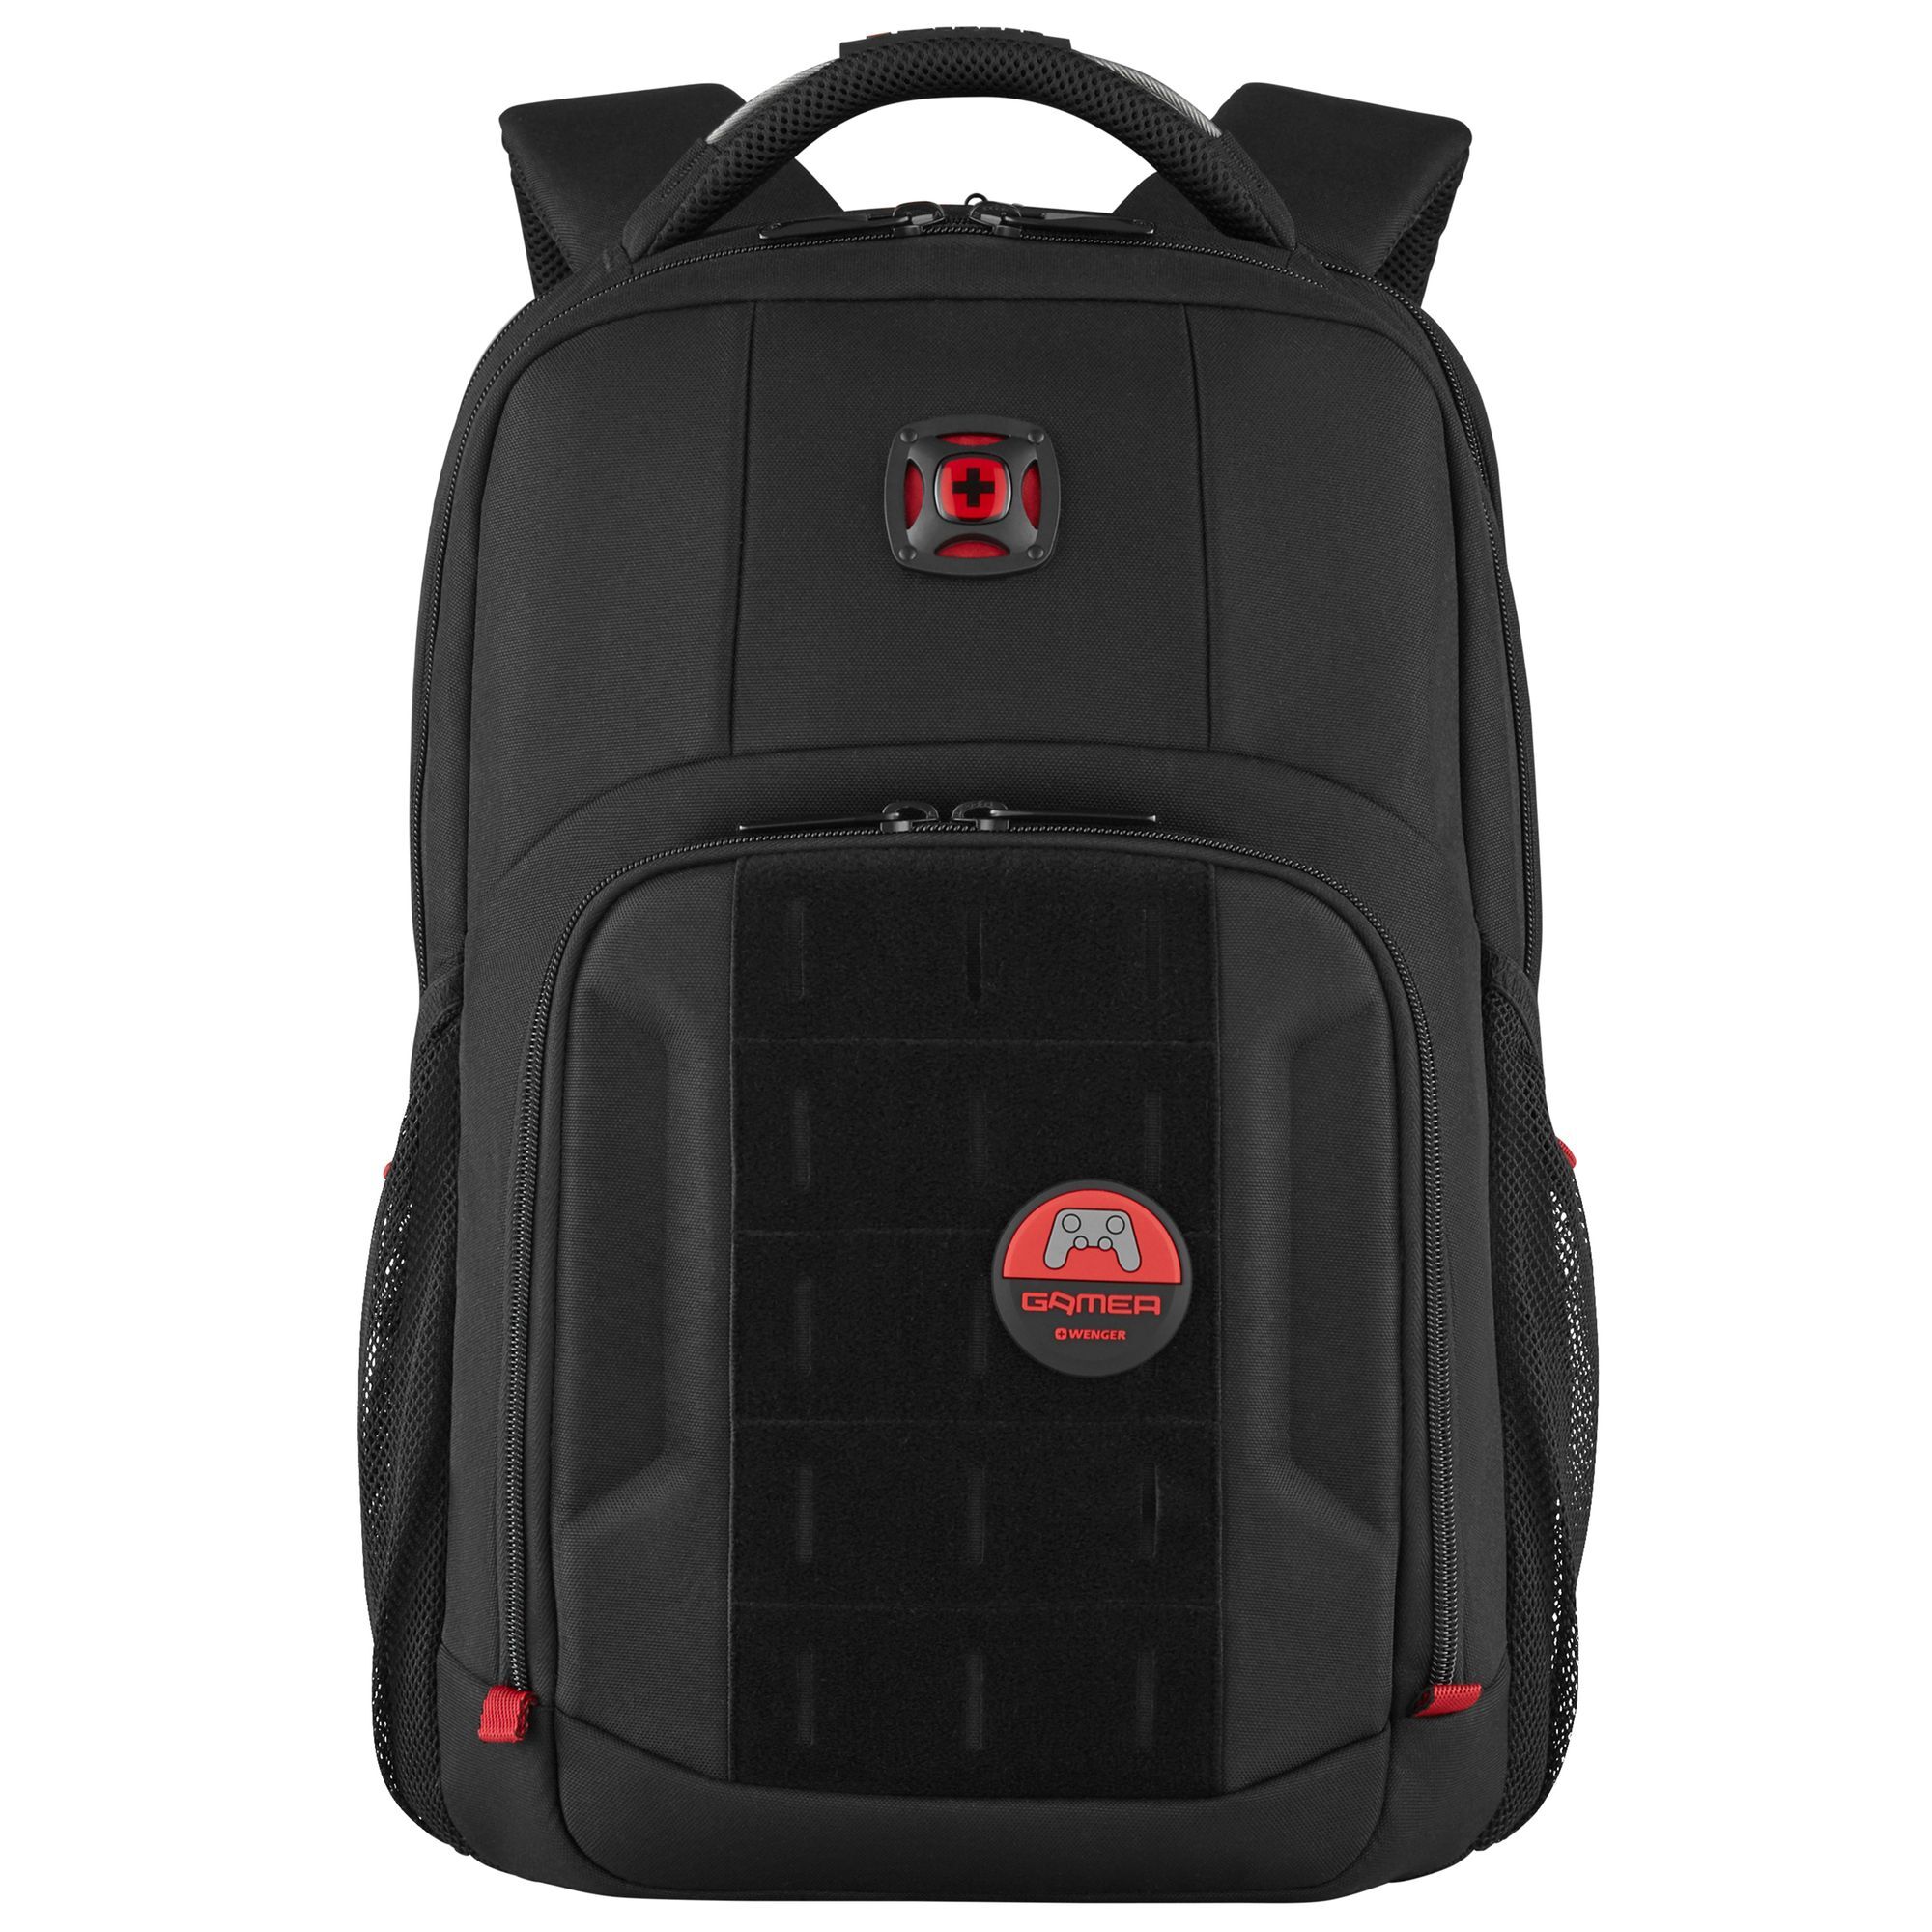 Рюкзак Wenger PlayerMode 46 cm Laptopfach, черный рюкзак wenger crango 46 cm laptopfach цвет gravity black